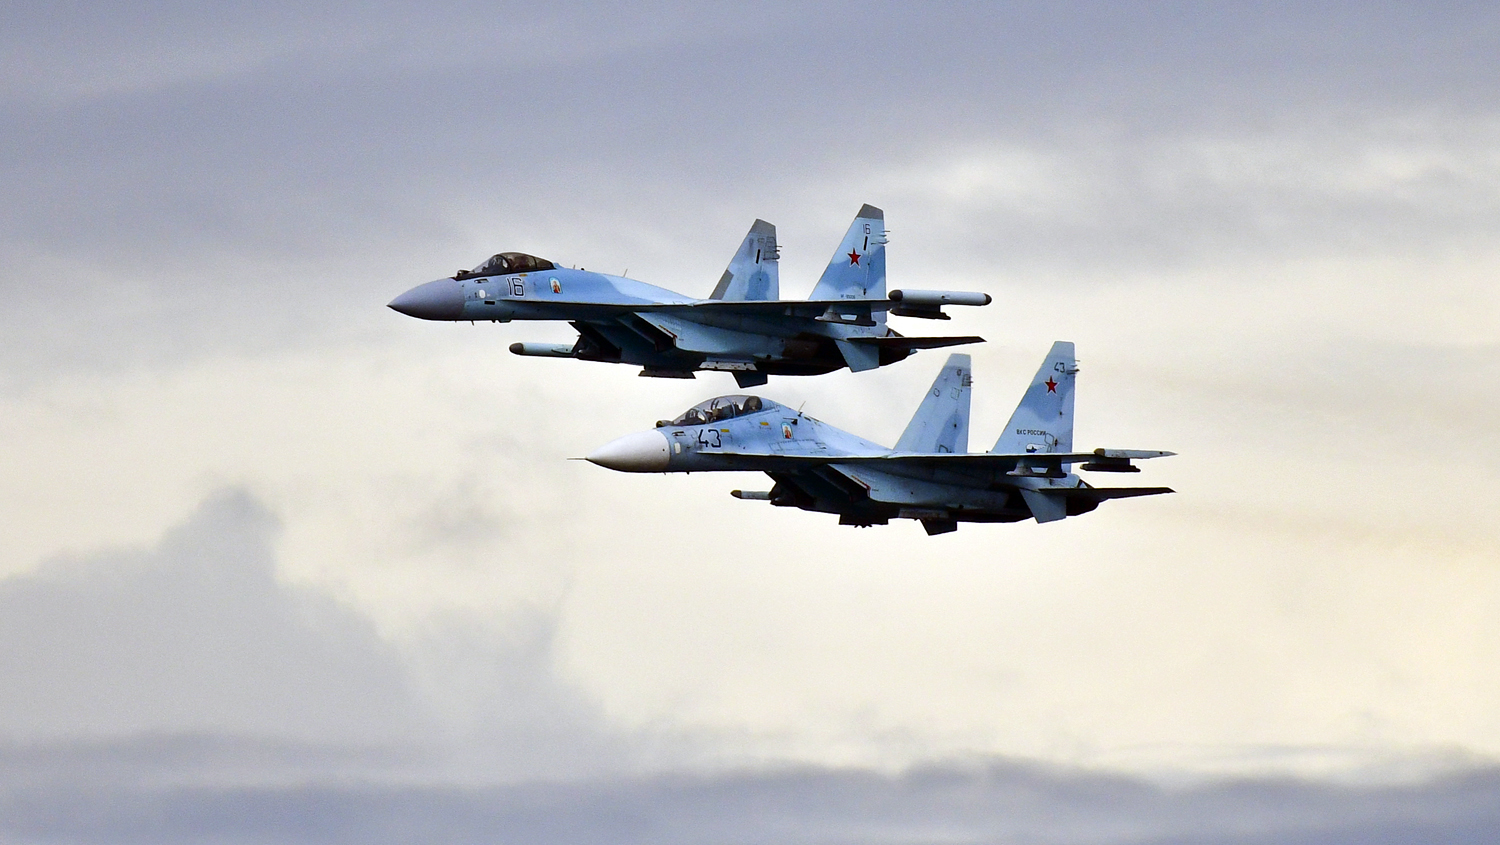 Σοκ για Τουρκία και ΗΠΑ: Η Αίγυπτος αποκτάει ρωσικά Su-35 μέχρι το 2021! – Αλλάζει δραματικά το ισοζύγιο ισχύος